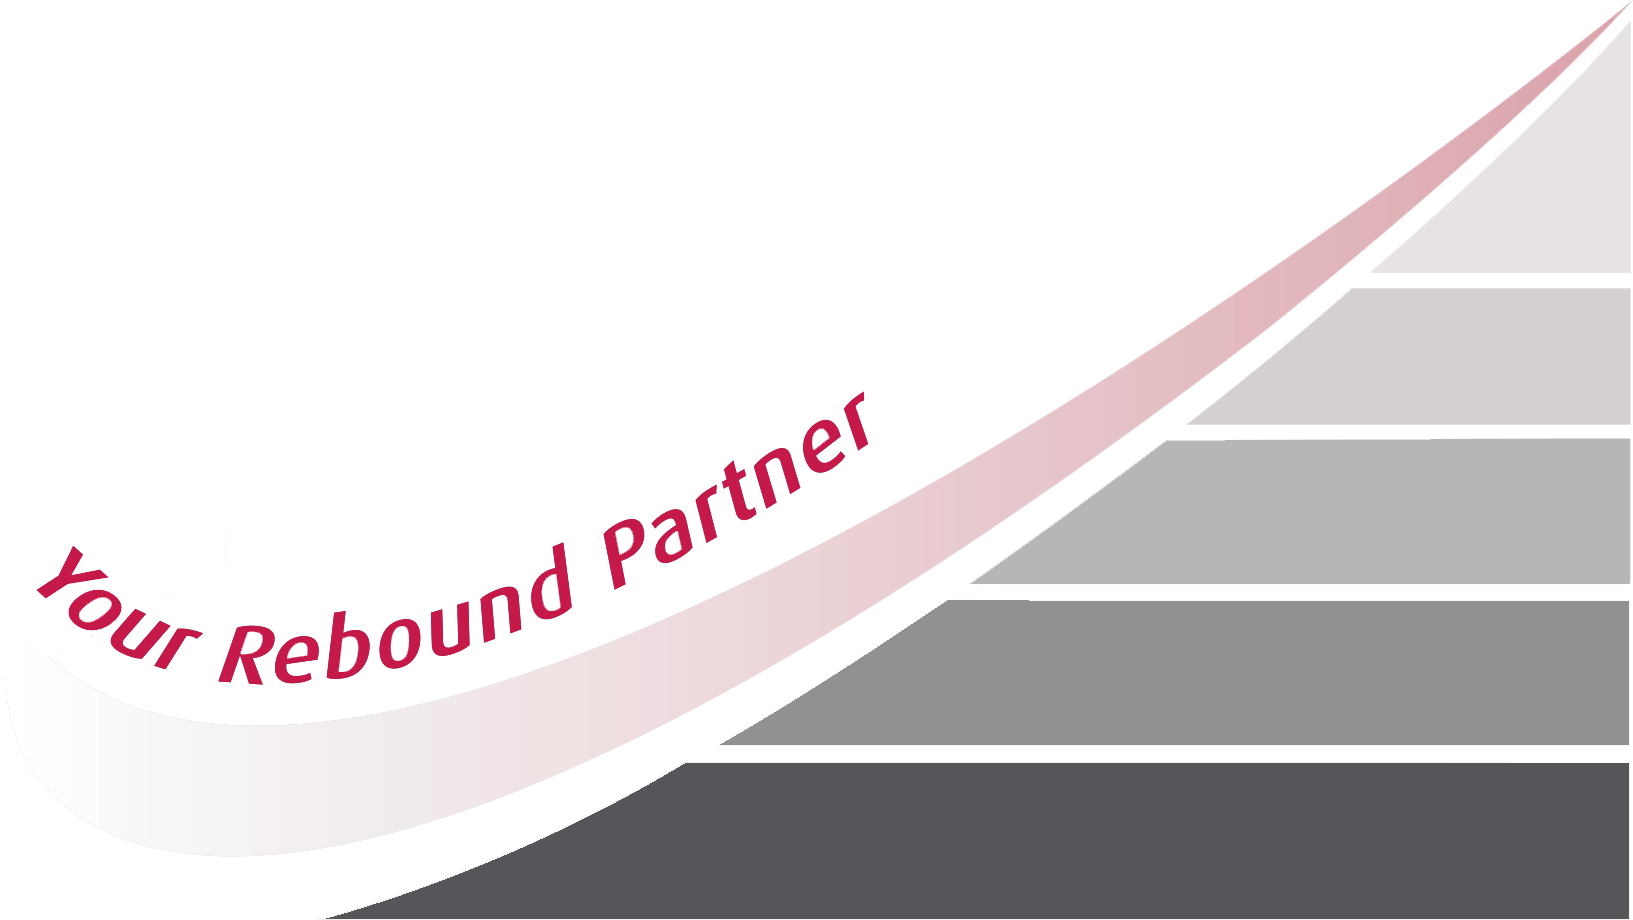 Your rebound partner